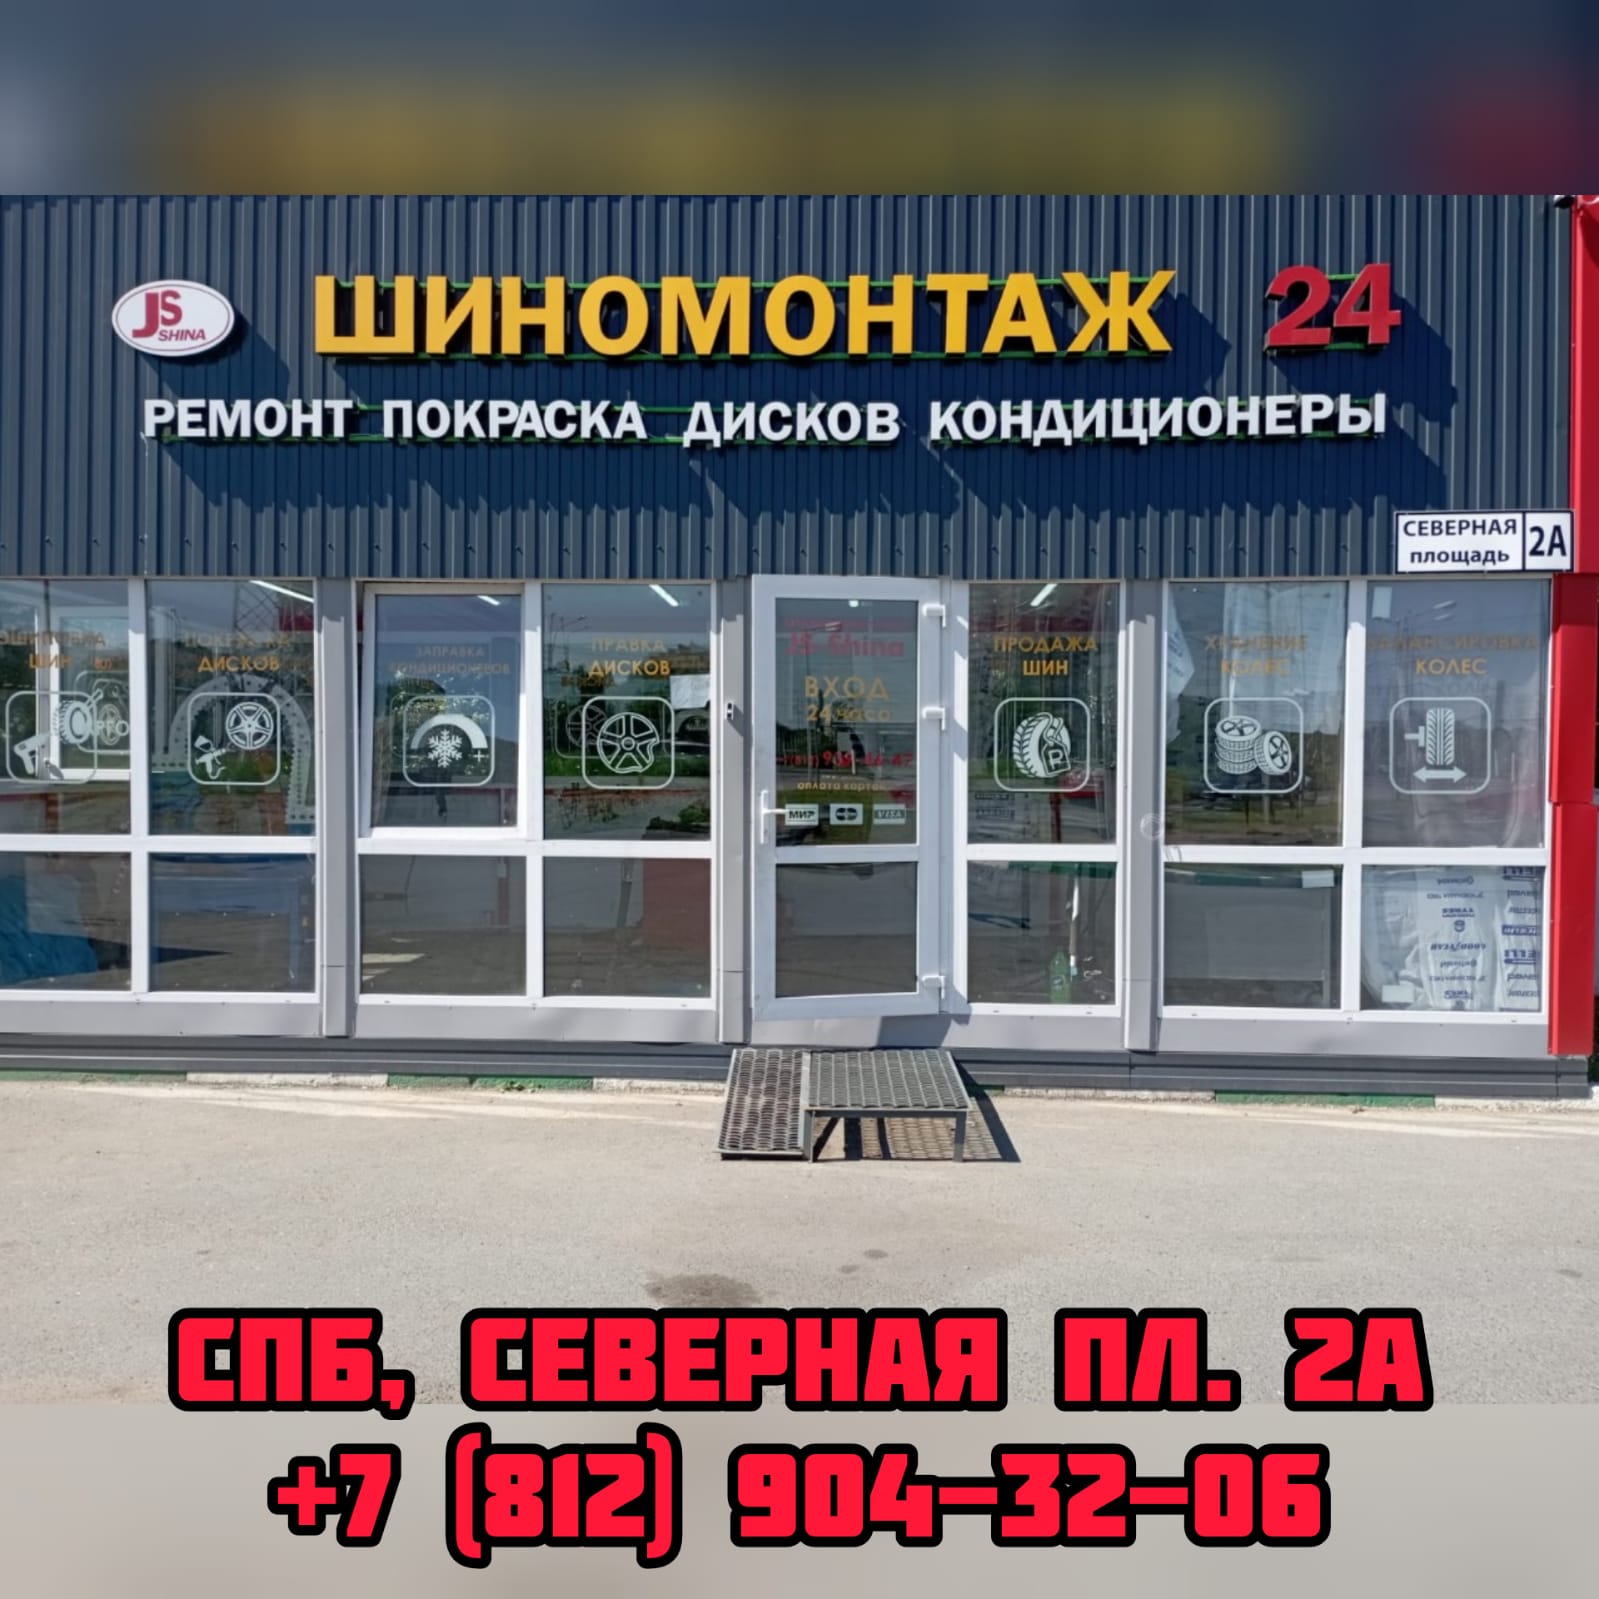 Шиномонтаж 24 часа в СПб, Северная пл. 2А ремонт дисков